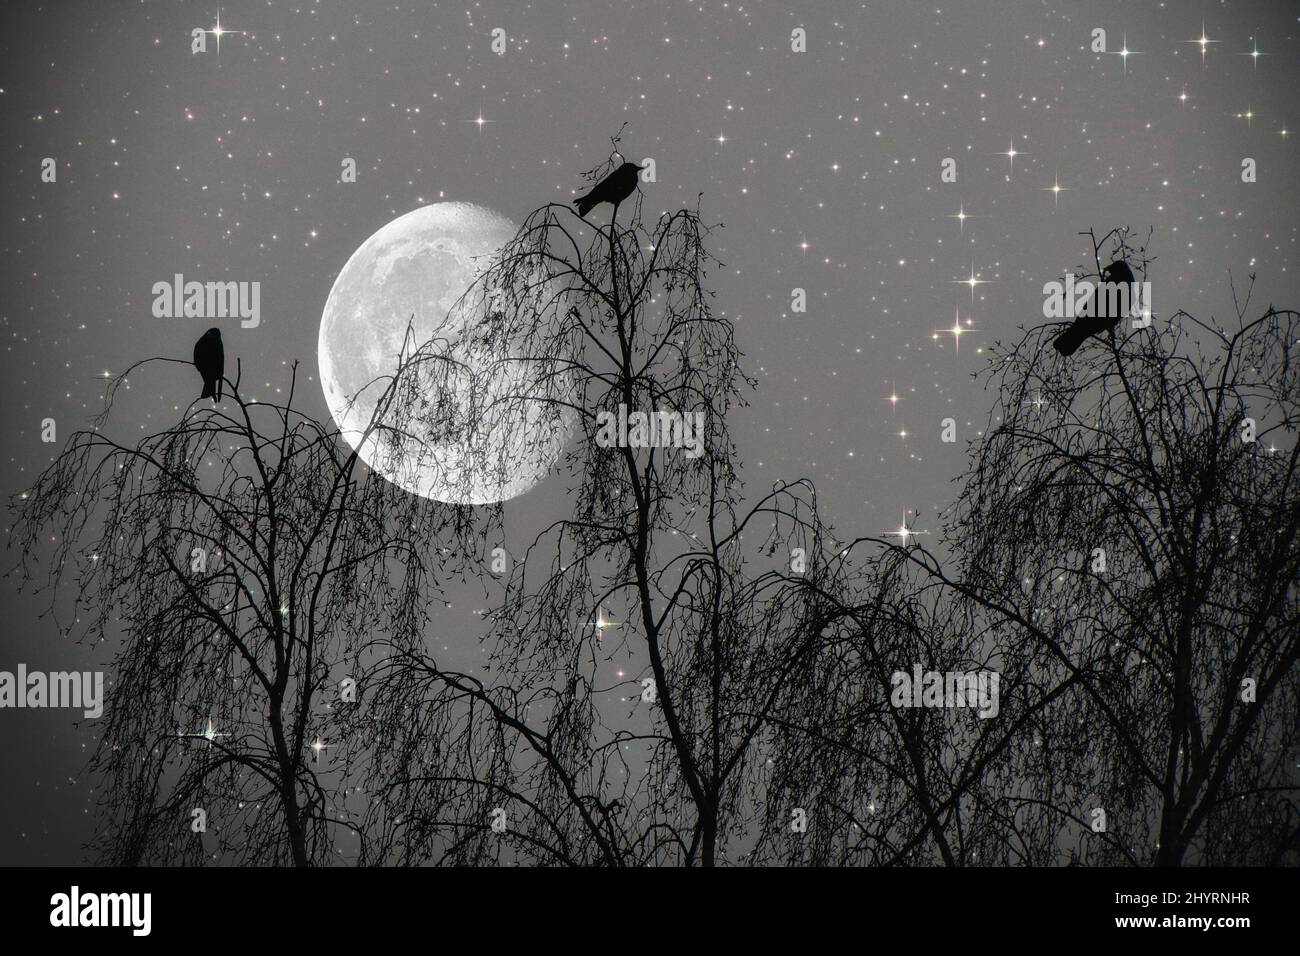 3 Vögel auf einem Baum im Hintergrund der Mond, 3 Birds on a Tree and the Moon - Moonlight, Mondlicht, Abend, evening, Night, Nacht, Fantasie, Fantasy Stock Photo